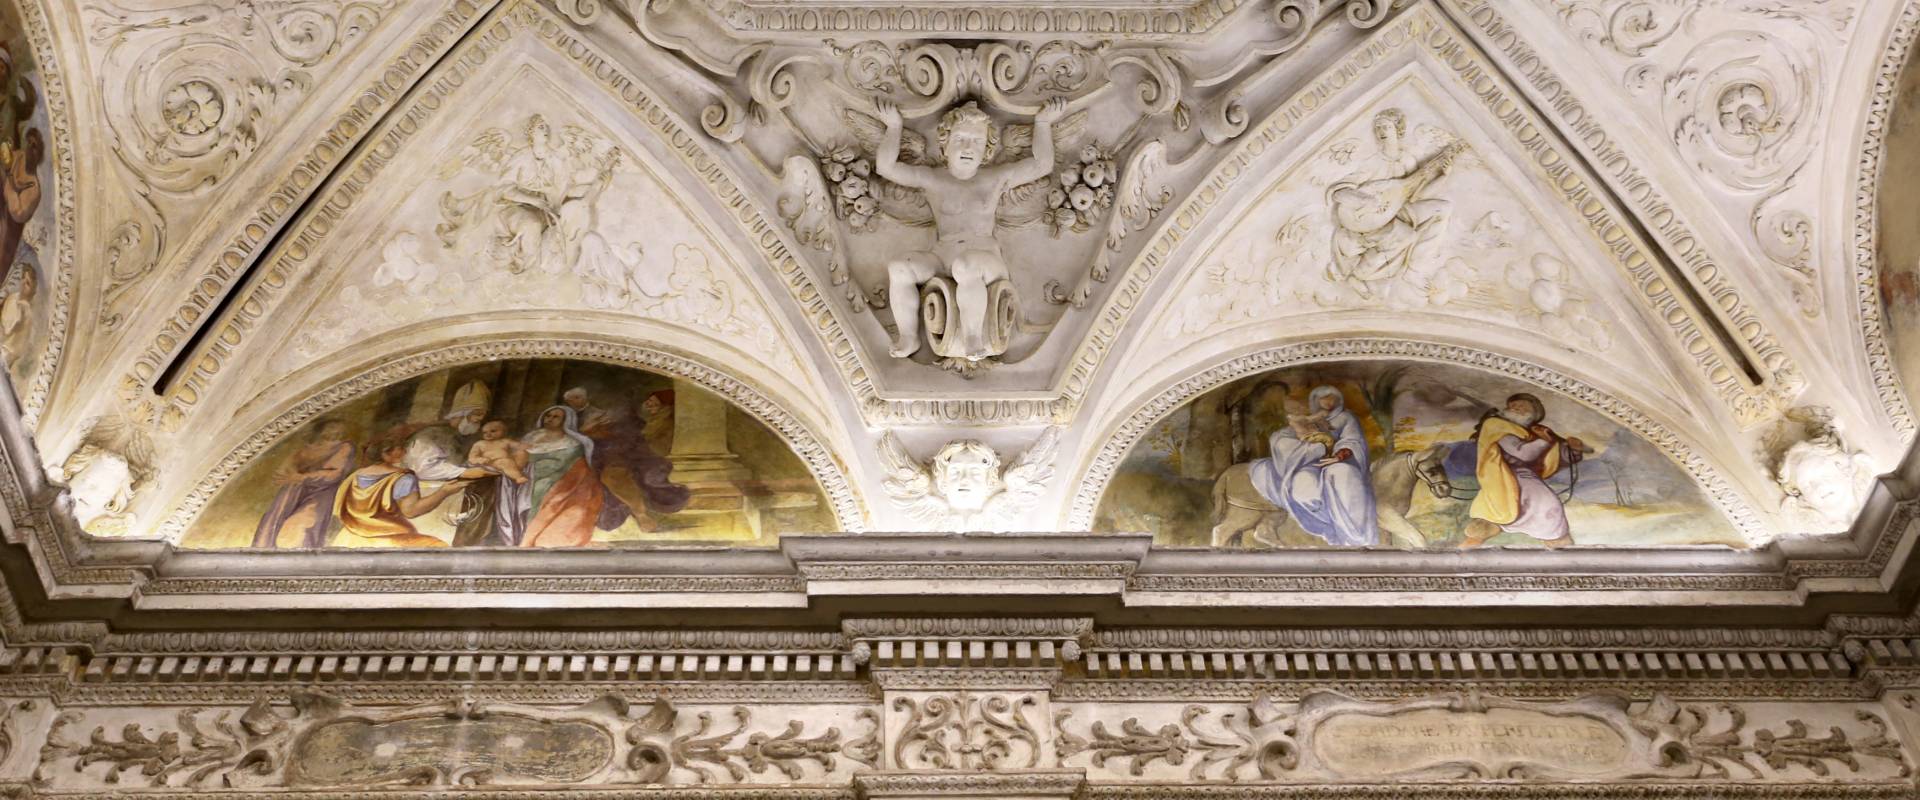 Gualtieri, palazzo bentivoglio, cappella, storie della vergine di scuola emiliana del 1605, 04 photo by Sailko